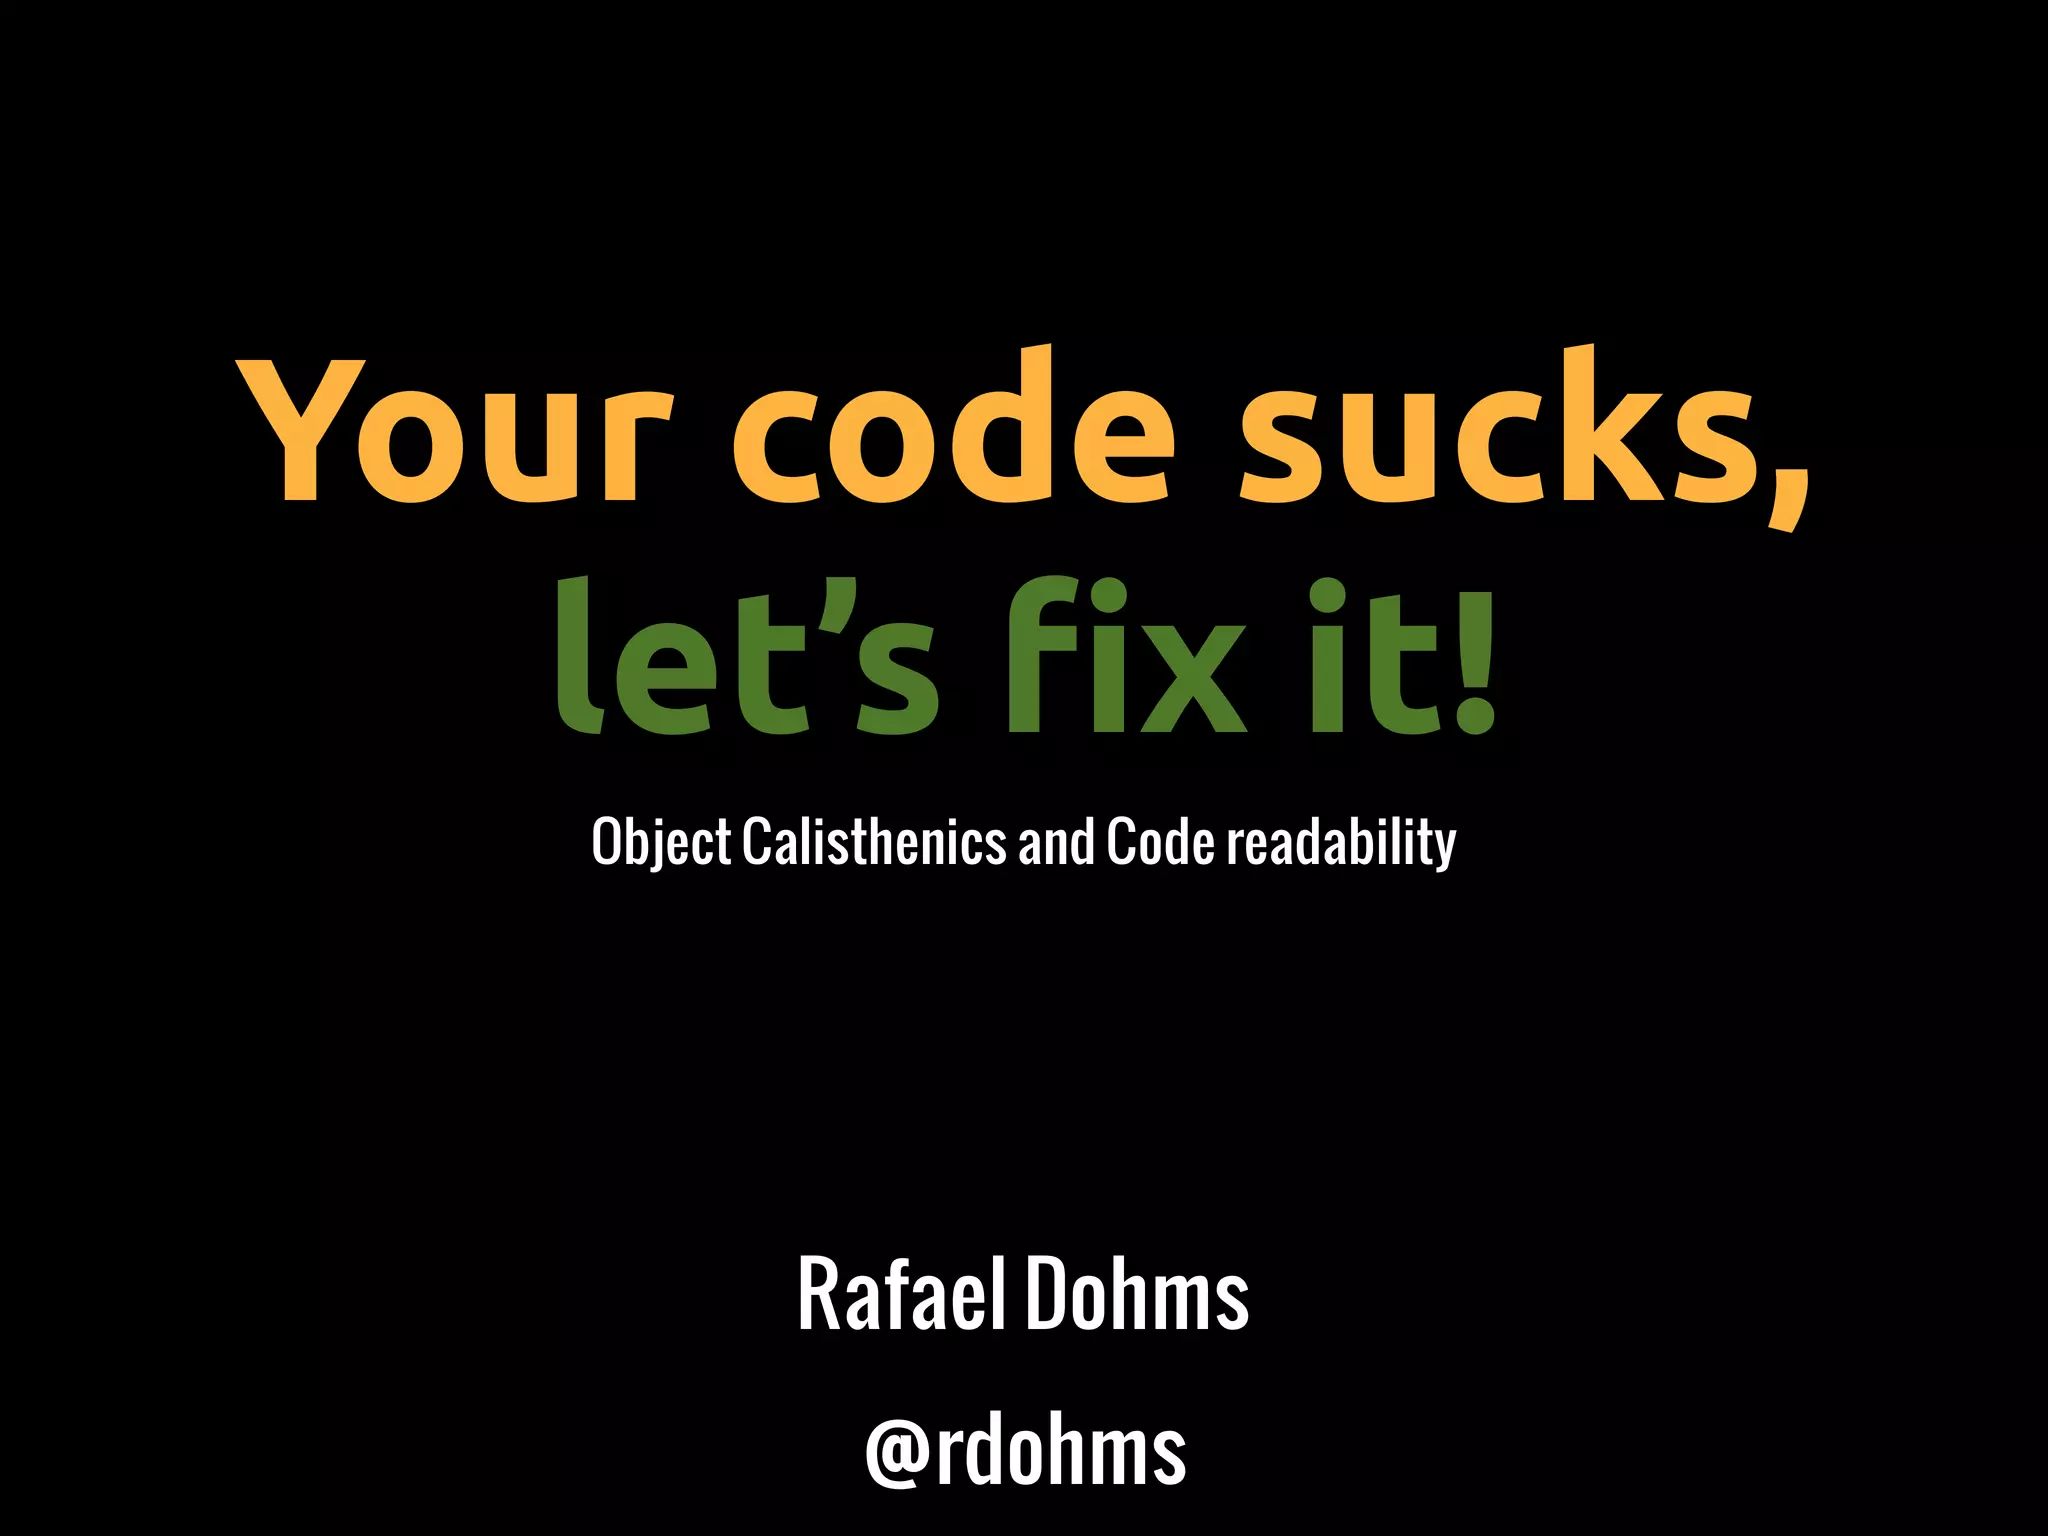 Your code sucks, let's fix it!